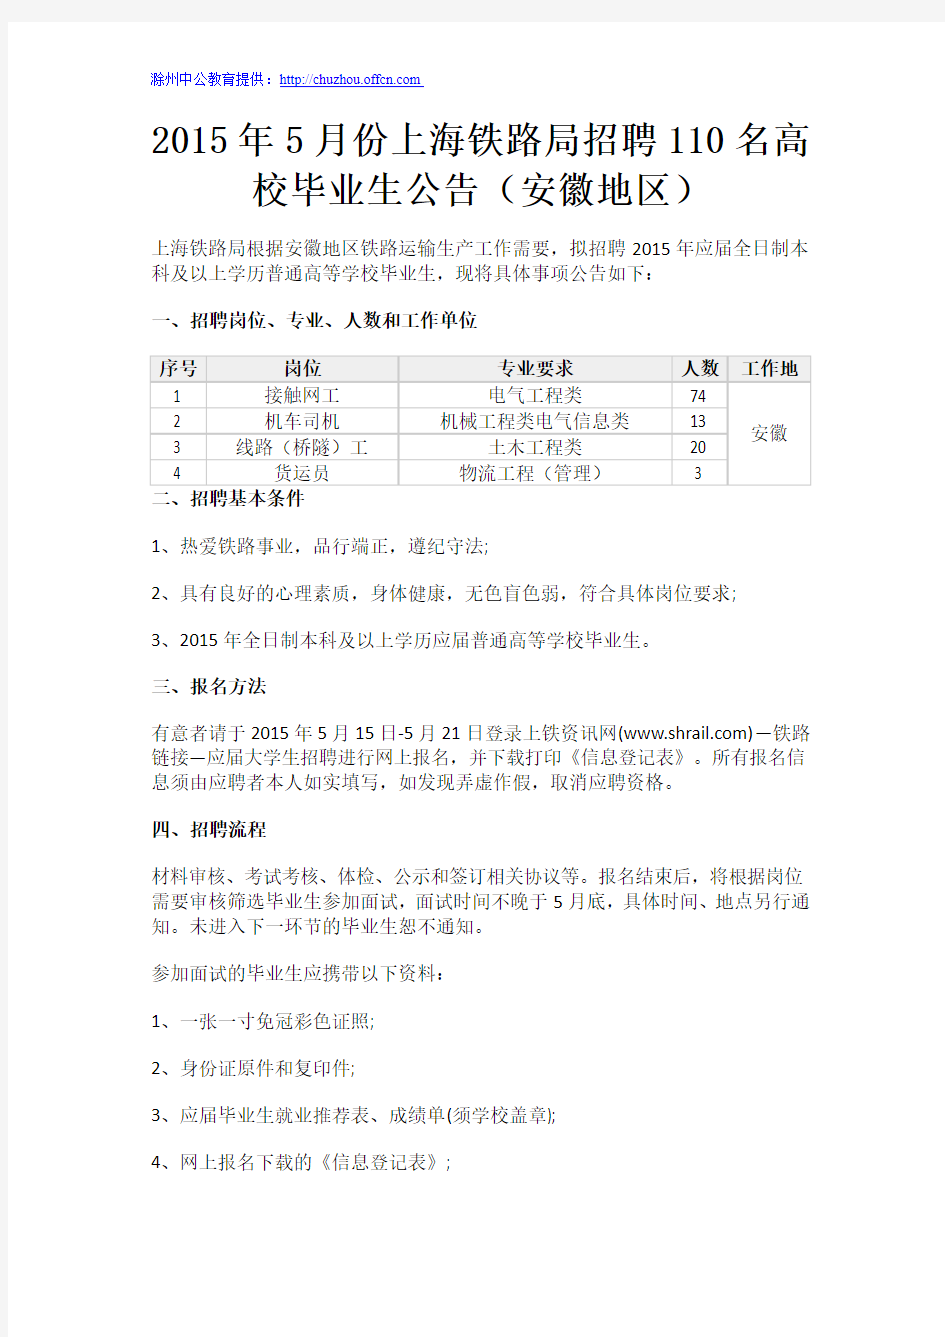 2015年5月份上海铁路局招聘110名高校毕业生公告(安徽地区)